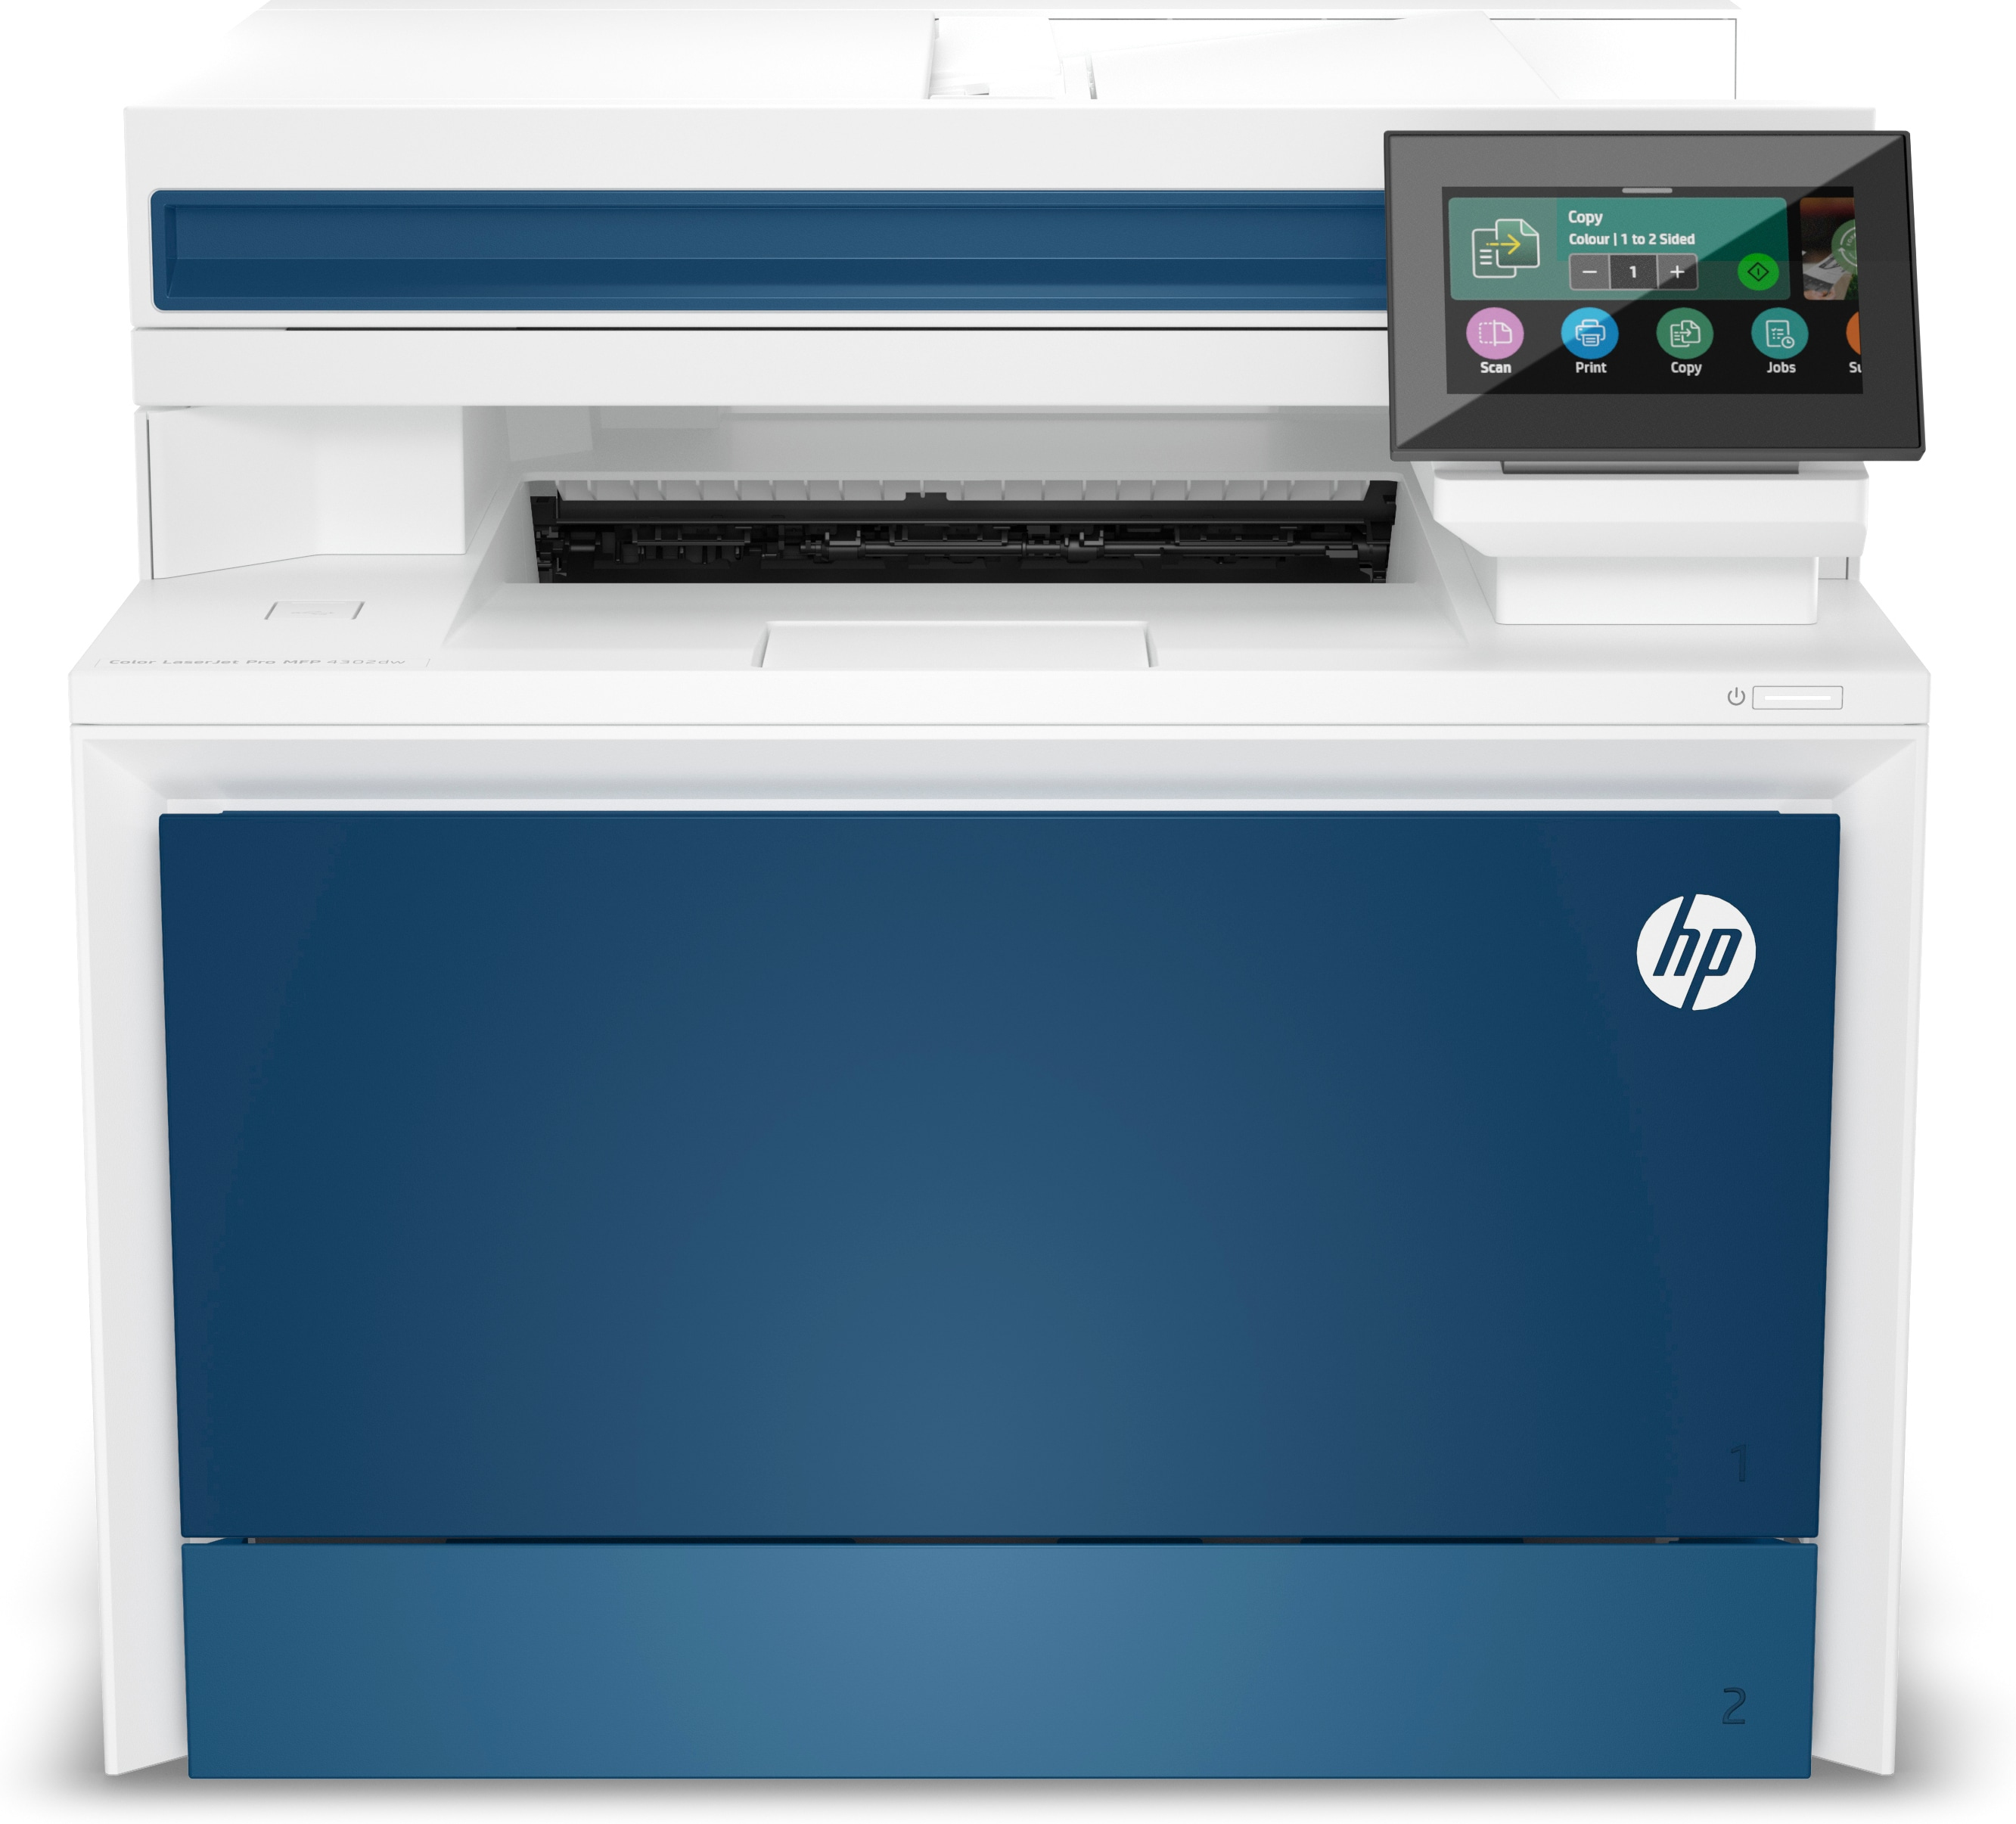 Image of HP Color LaserJet Pro Stampante multifunzione 4302dw, Colore, Stampante per Piccole e medie imprese, Stampa, copia, scansione, Wireless; Stampa da smartphone o tablet; alimentatore automatico di documenti